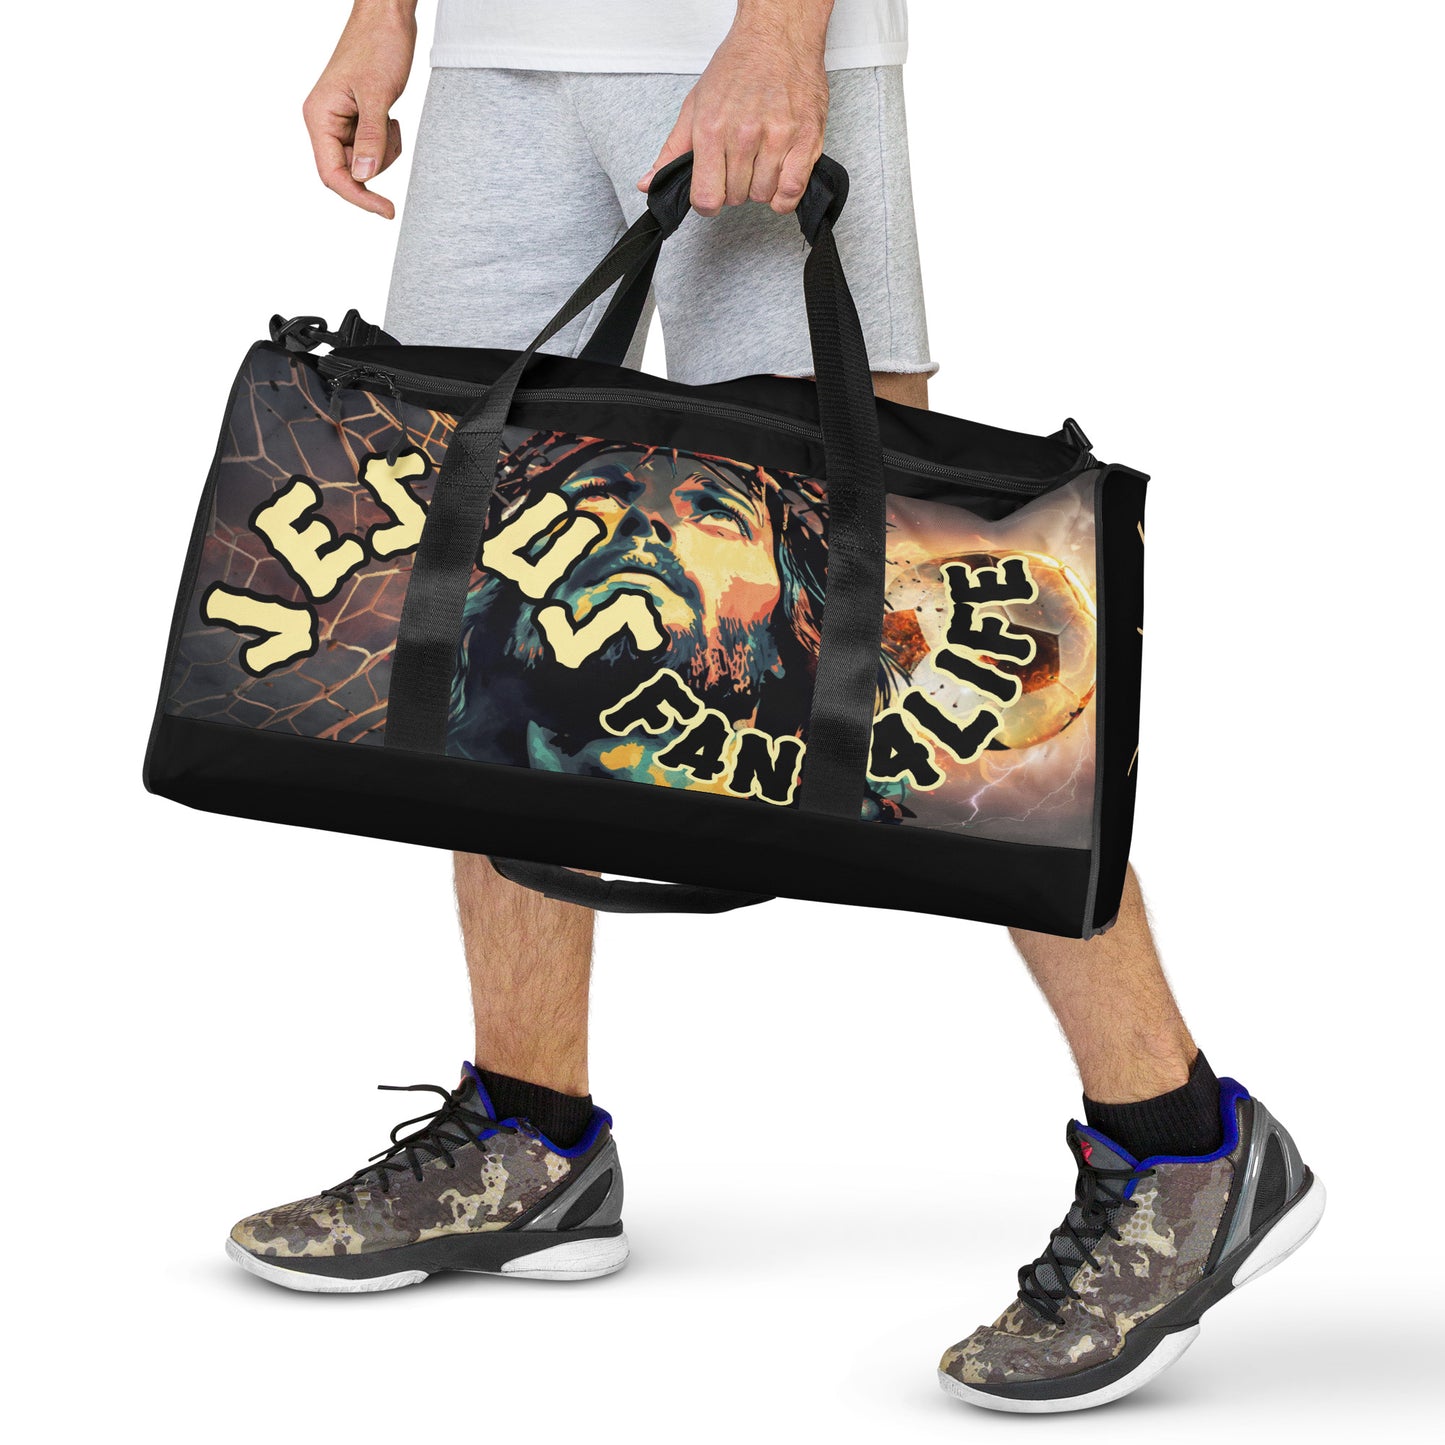 Jesus Fan 4Life- Soccer Duffle bag